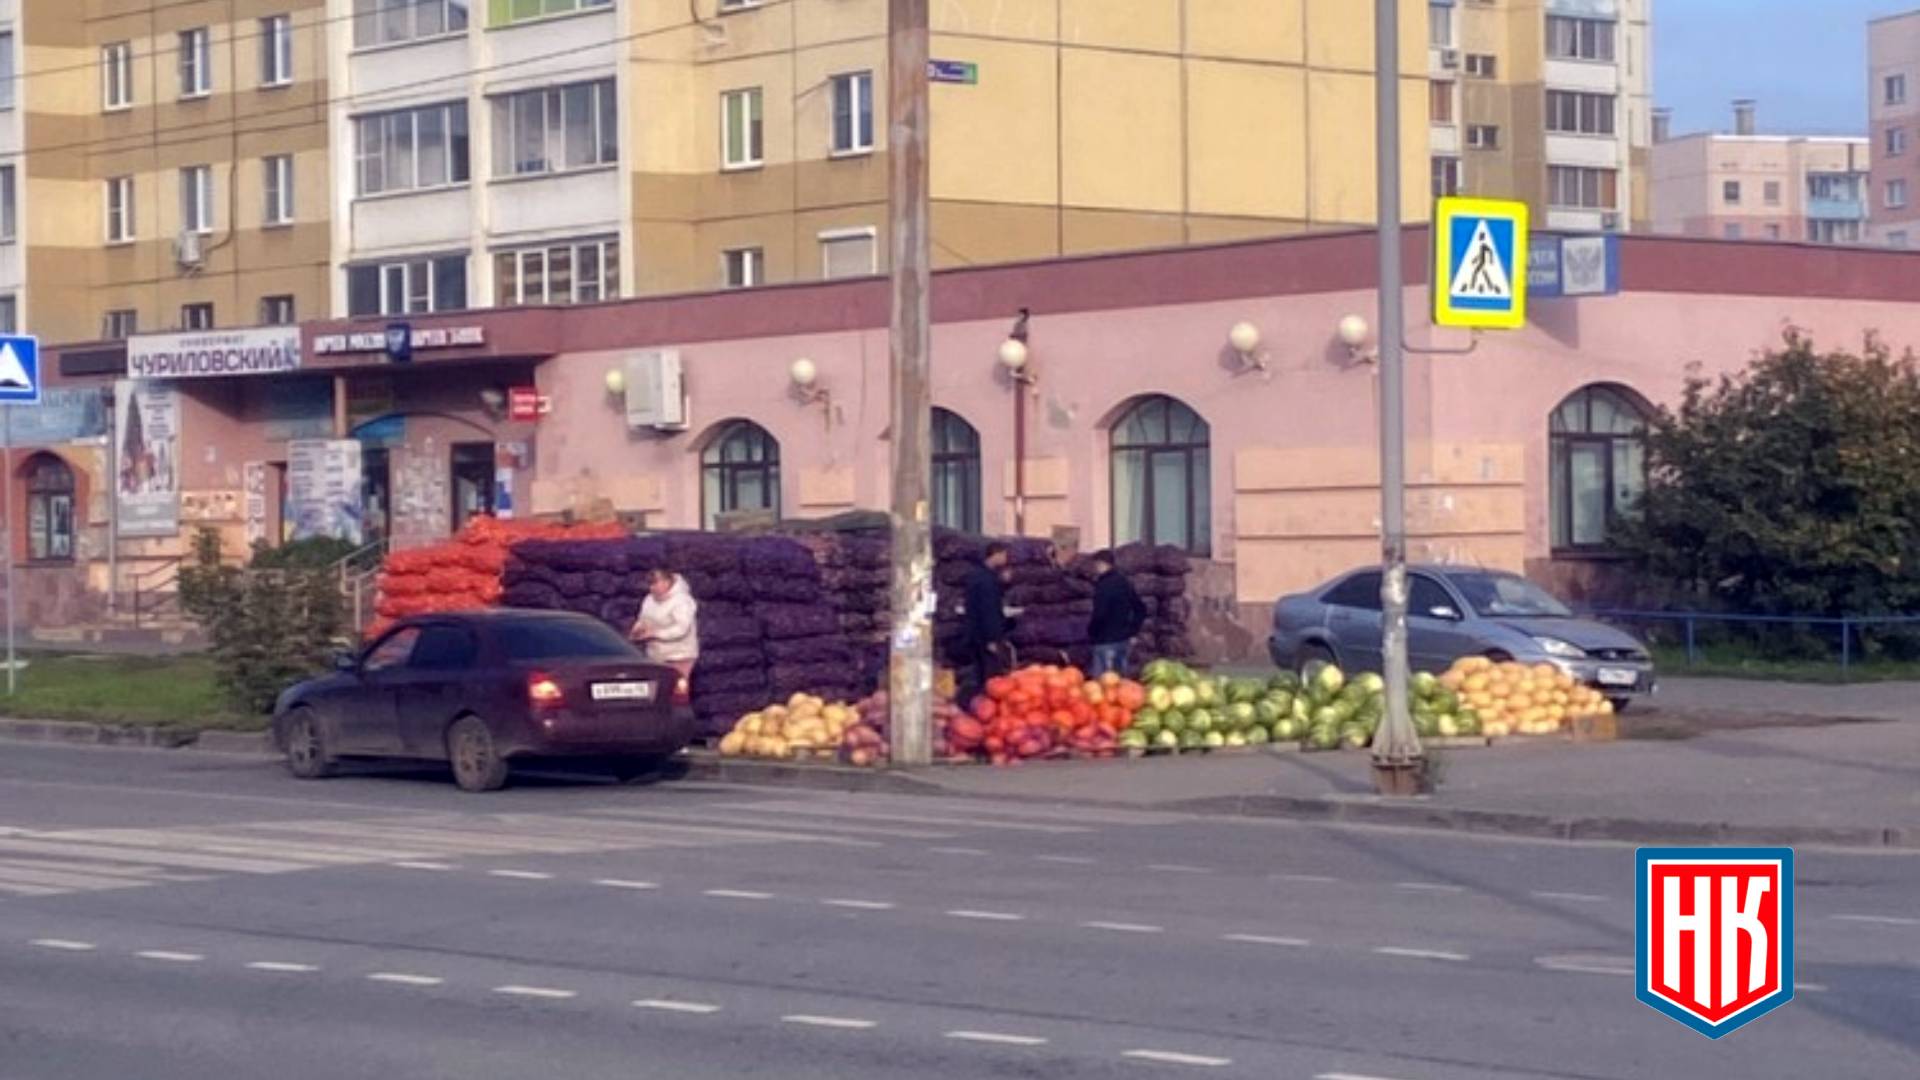 Уличная торговля в Челябинске: был один ряд картофеля, теперь 10 рядов